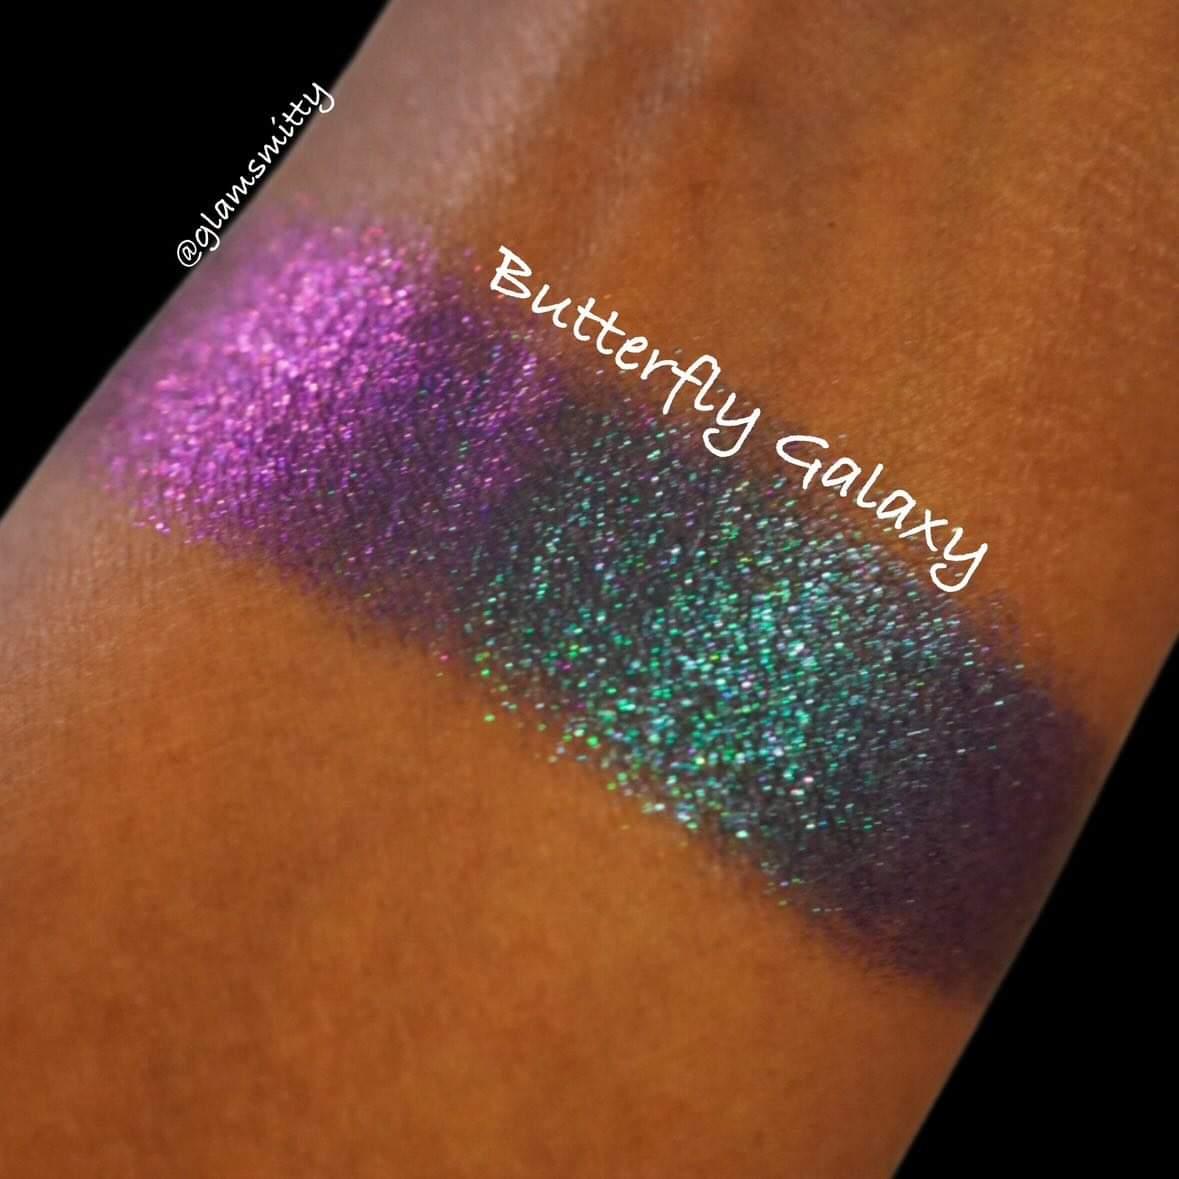 Butterfly Galaxy-Multichrome Eyeshadow